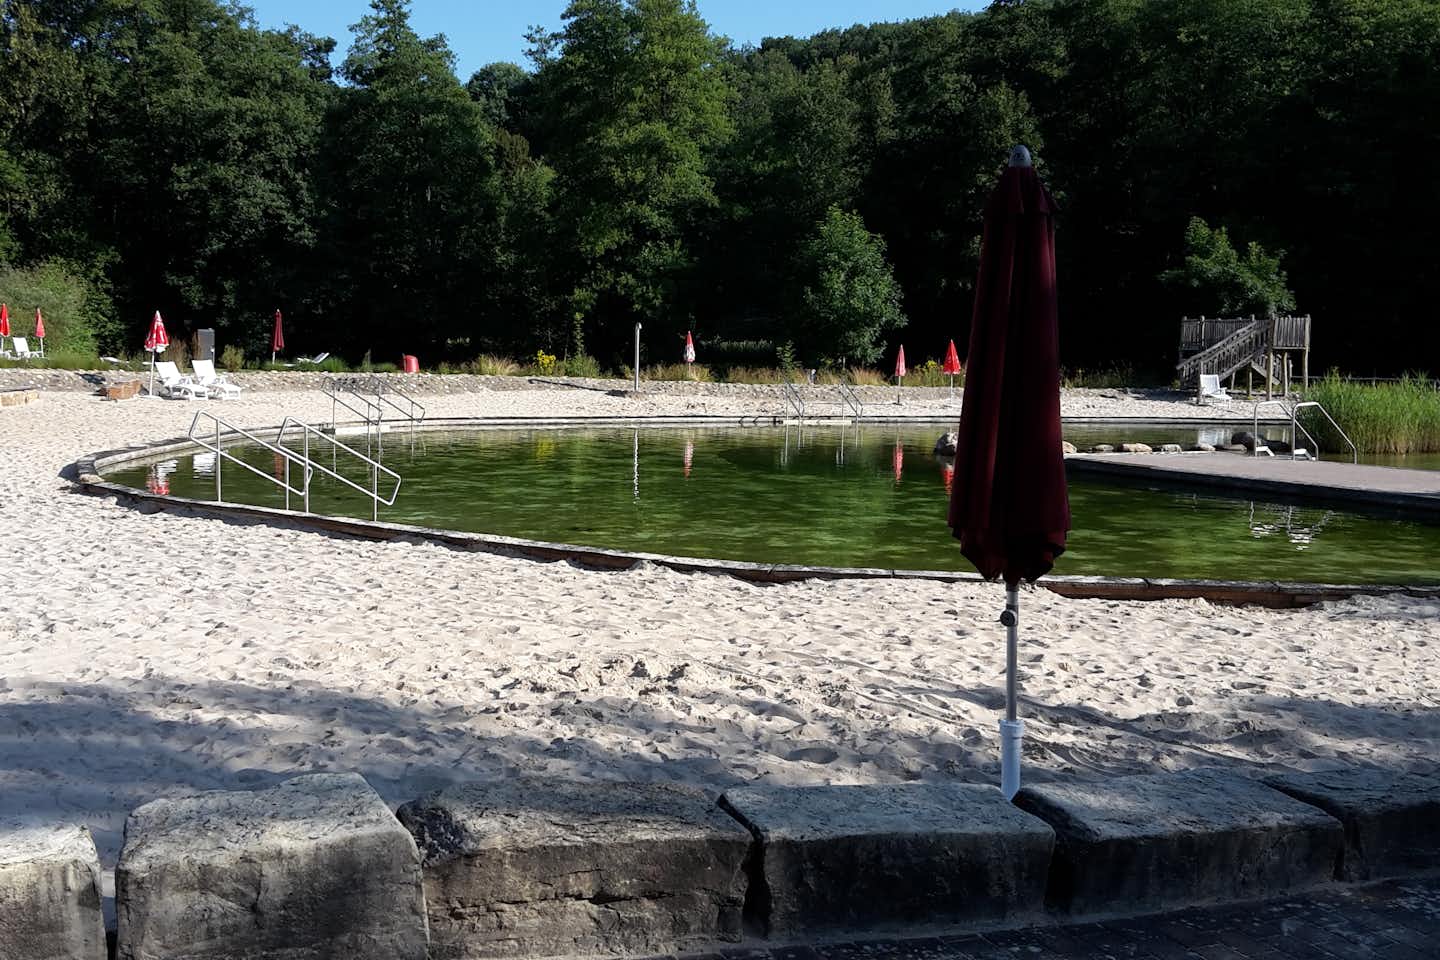 Campingplatz des TuS Tiefenstein - Badesee mit Strand,  Liegestühlen und Sonnenschirmen